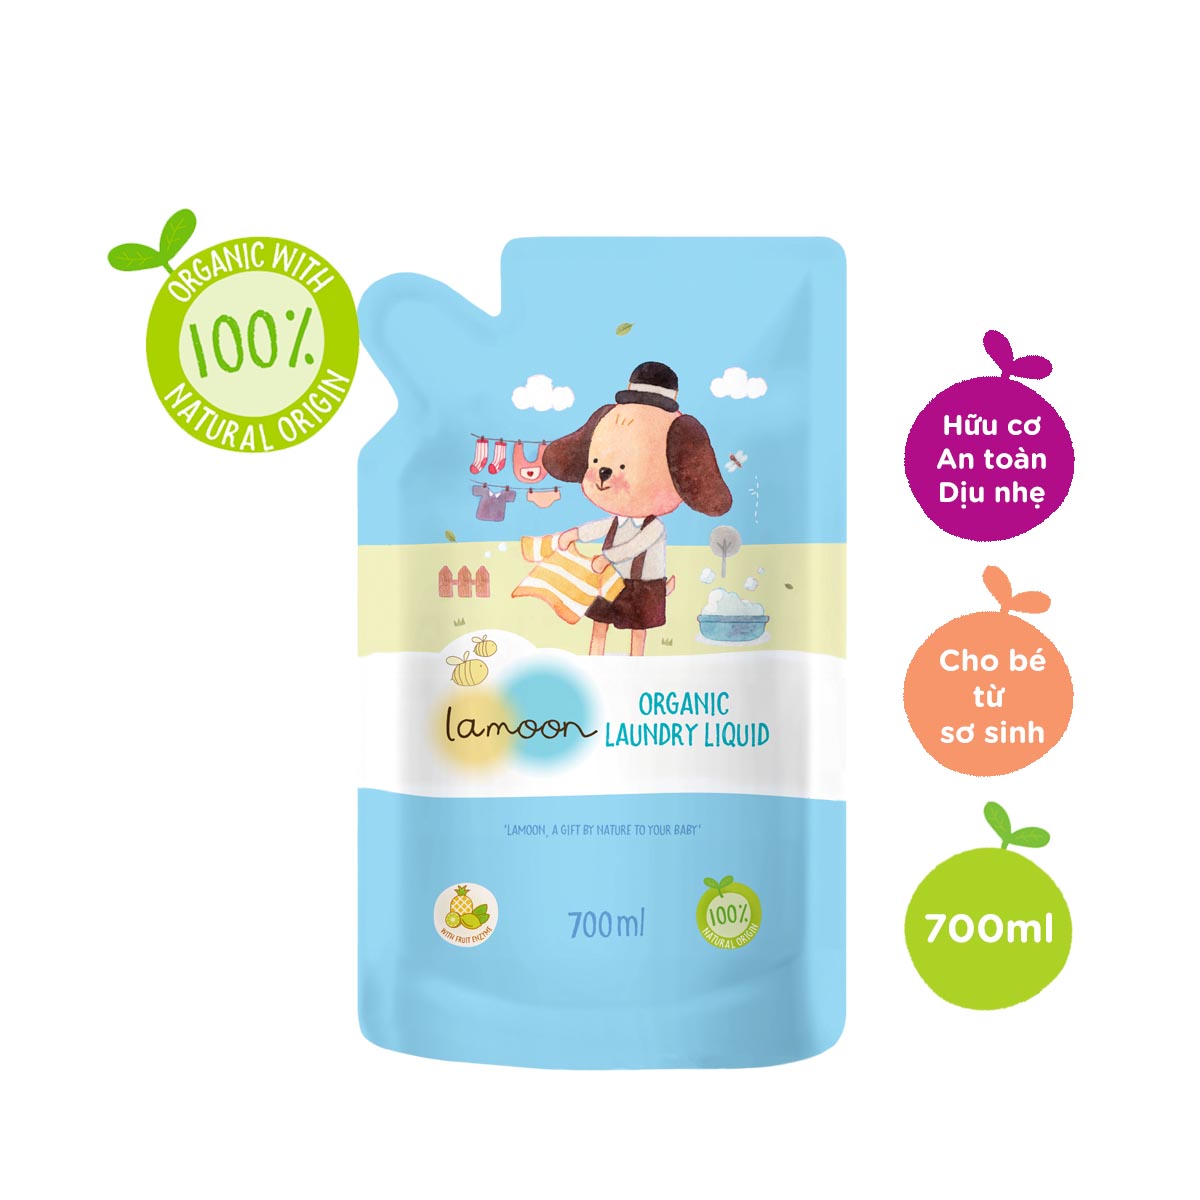 COMBO Nước giặt đồ sơ sinh Organic an toàn cho bé Lamoon Dạng Bình 750ml - Túi 700ml Refill